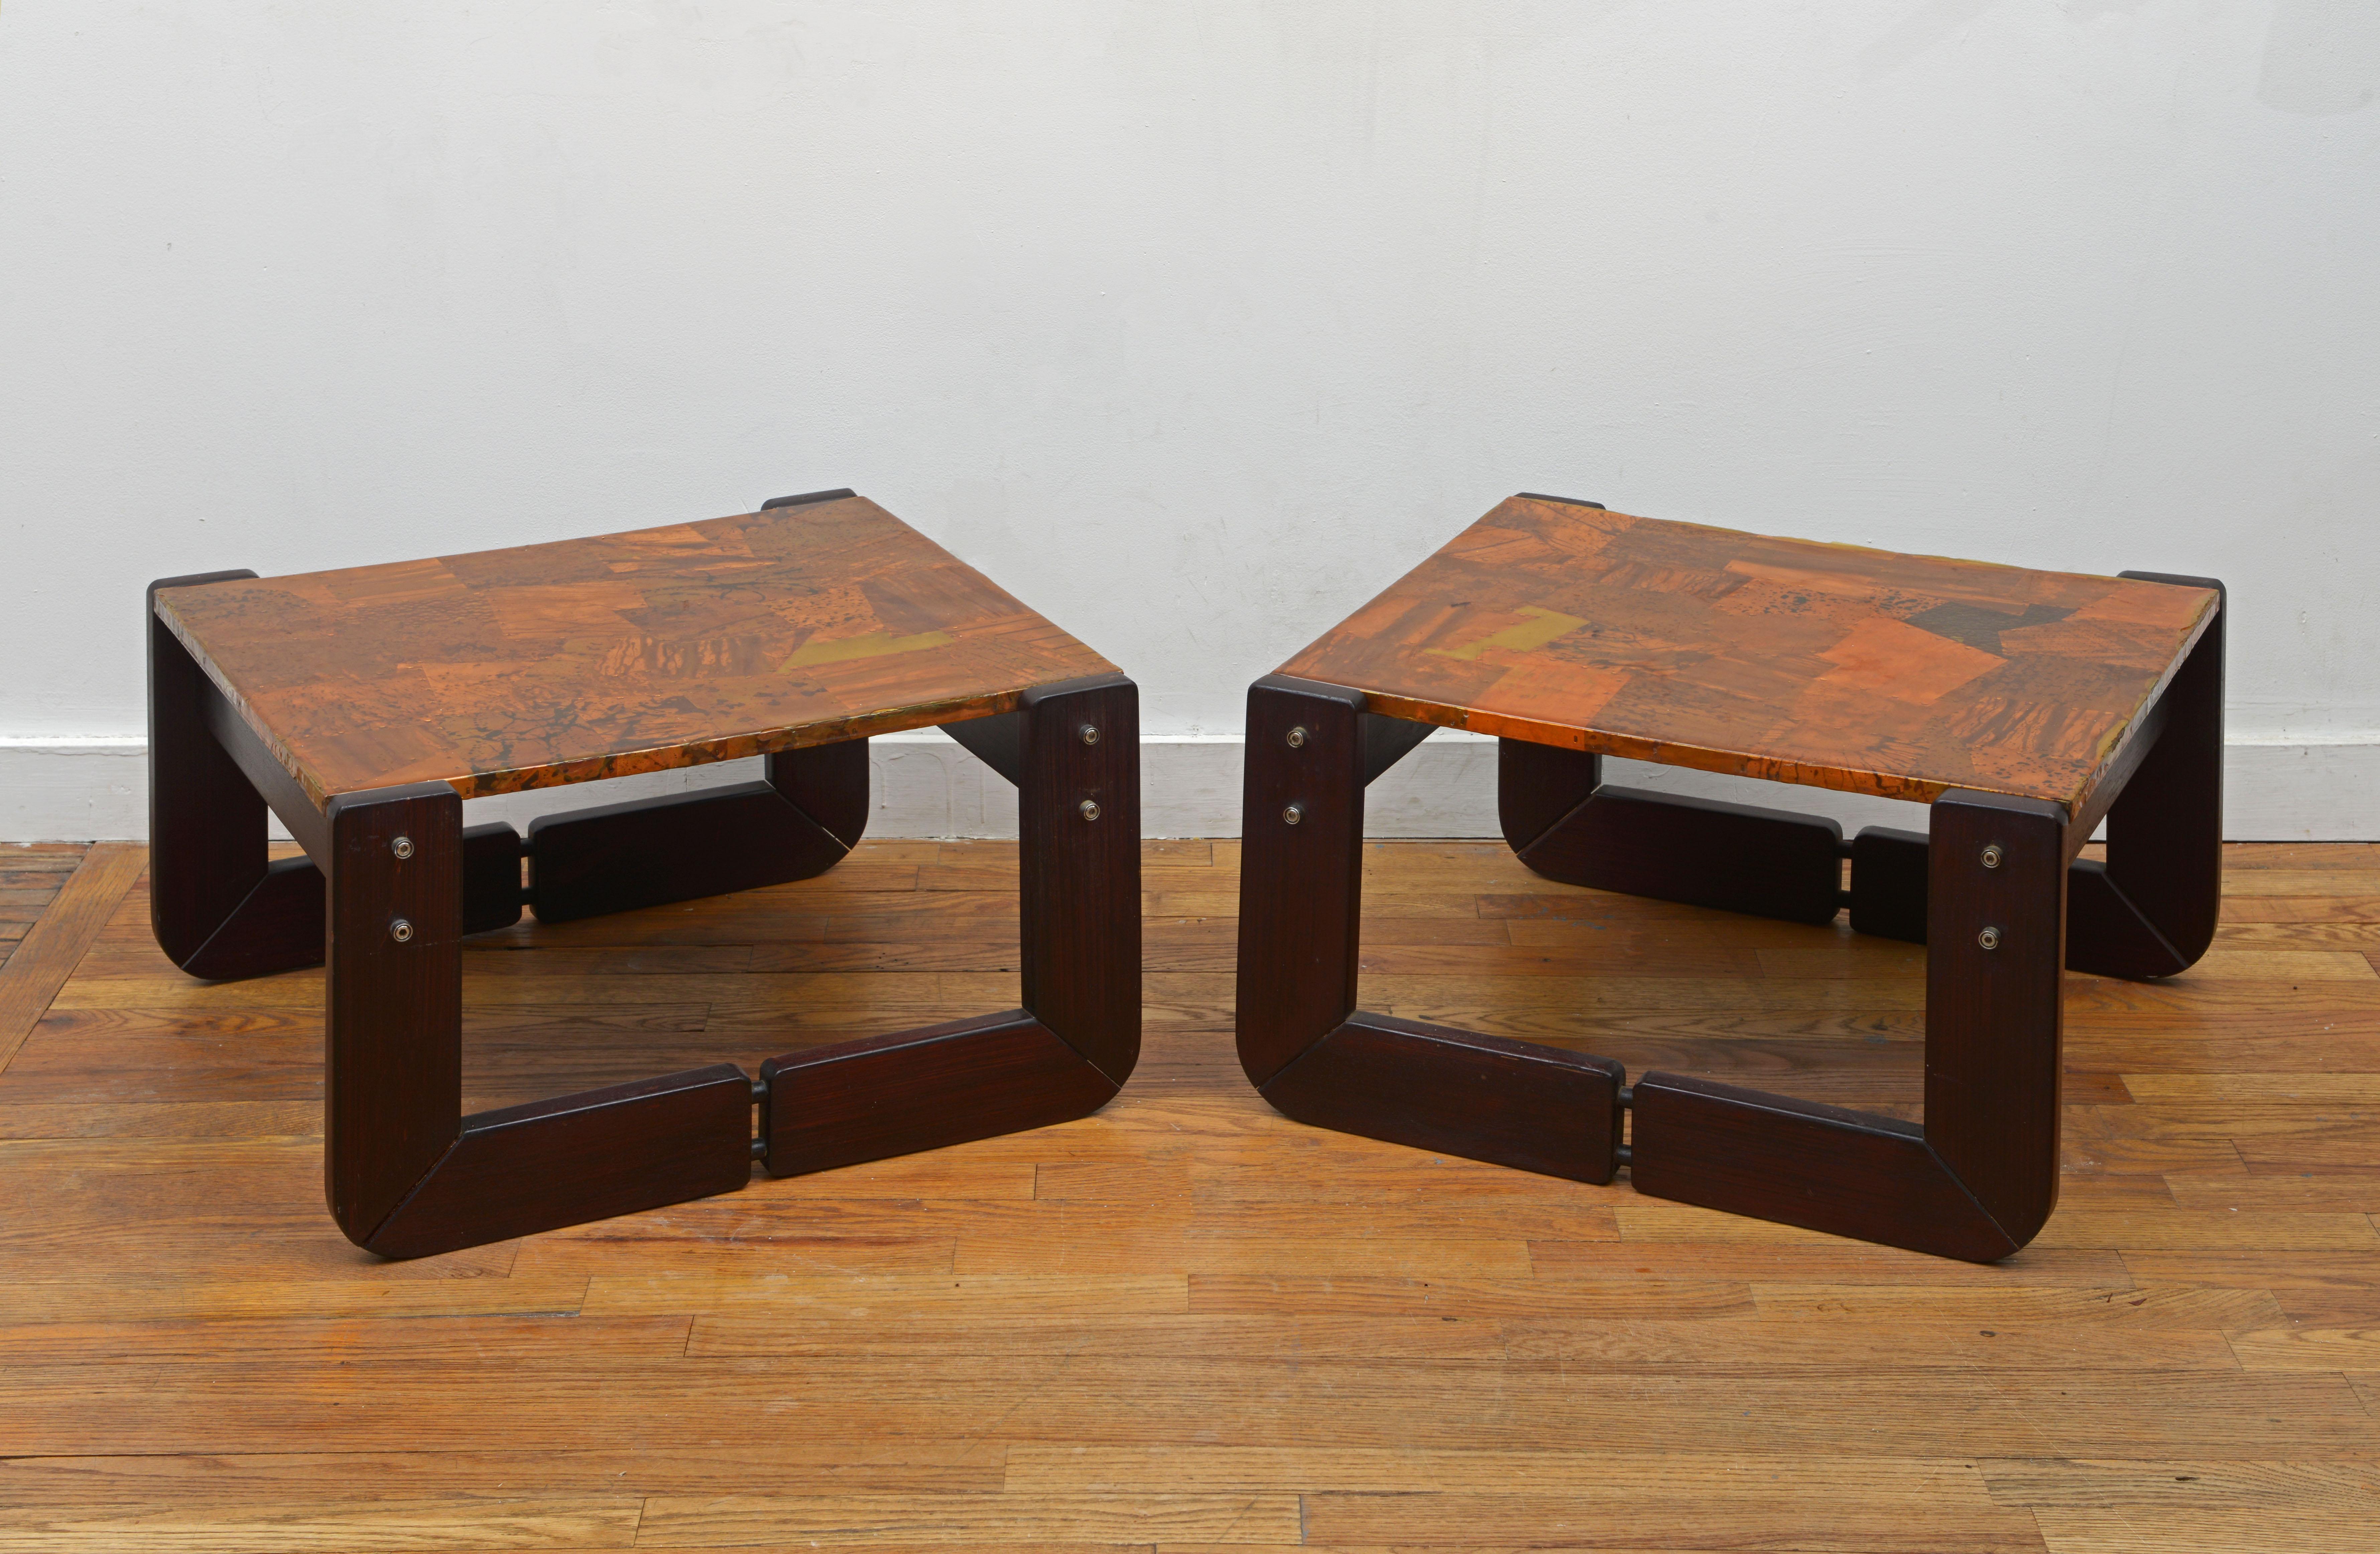 Une incroyable paire de tables d'appoint en cuivre Patchwork de Percival Lafer avec des cadres en bois de rose massif, années 1970 (Signée avec l'étiquette Lafer MP Made in Brazil). Ces beautés modernes brésiliennes  comportent des couvercles